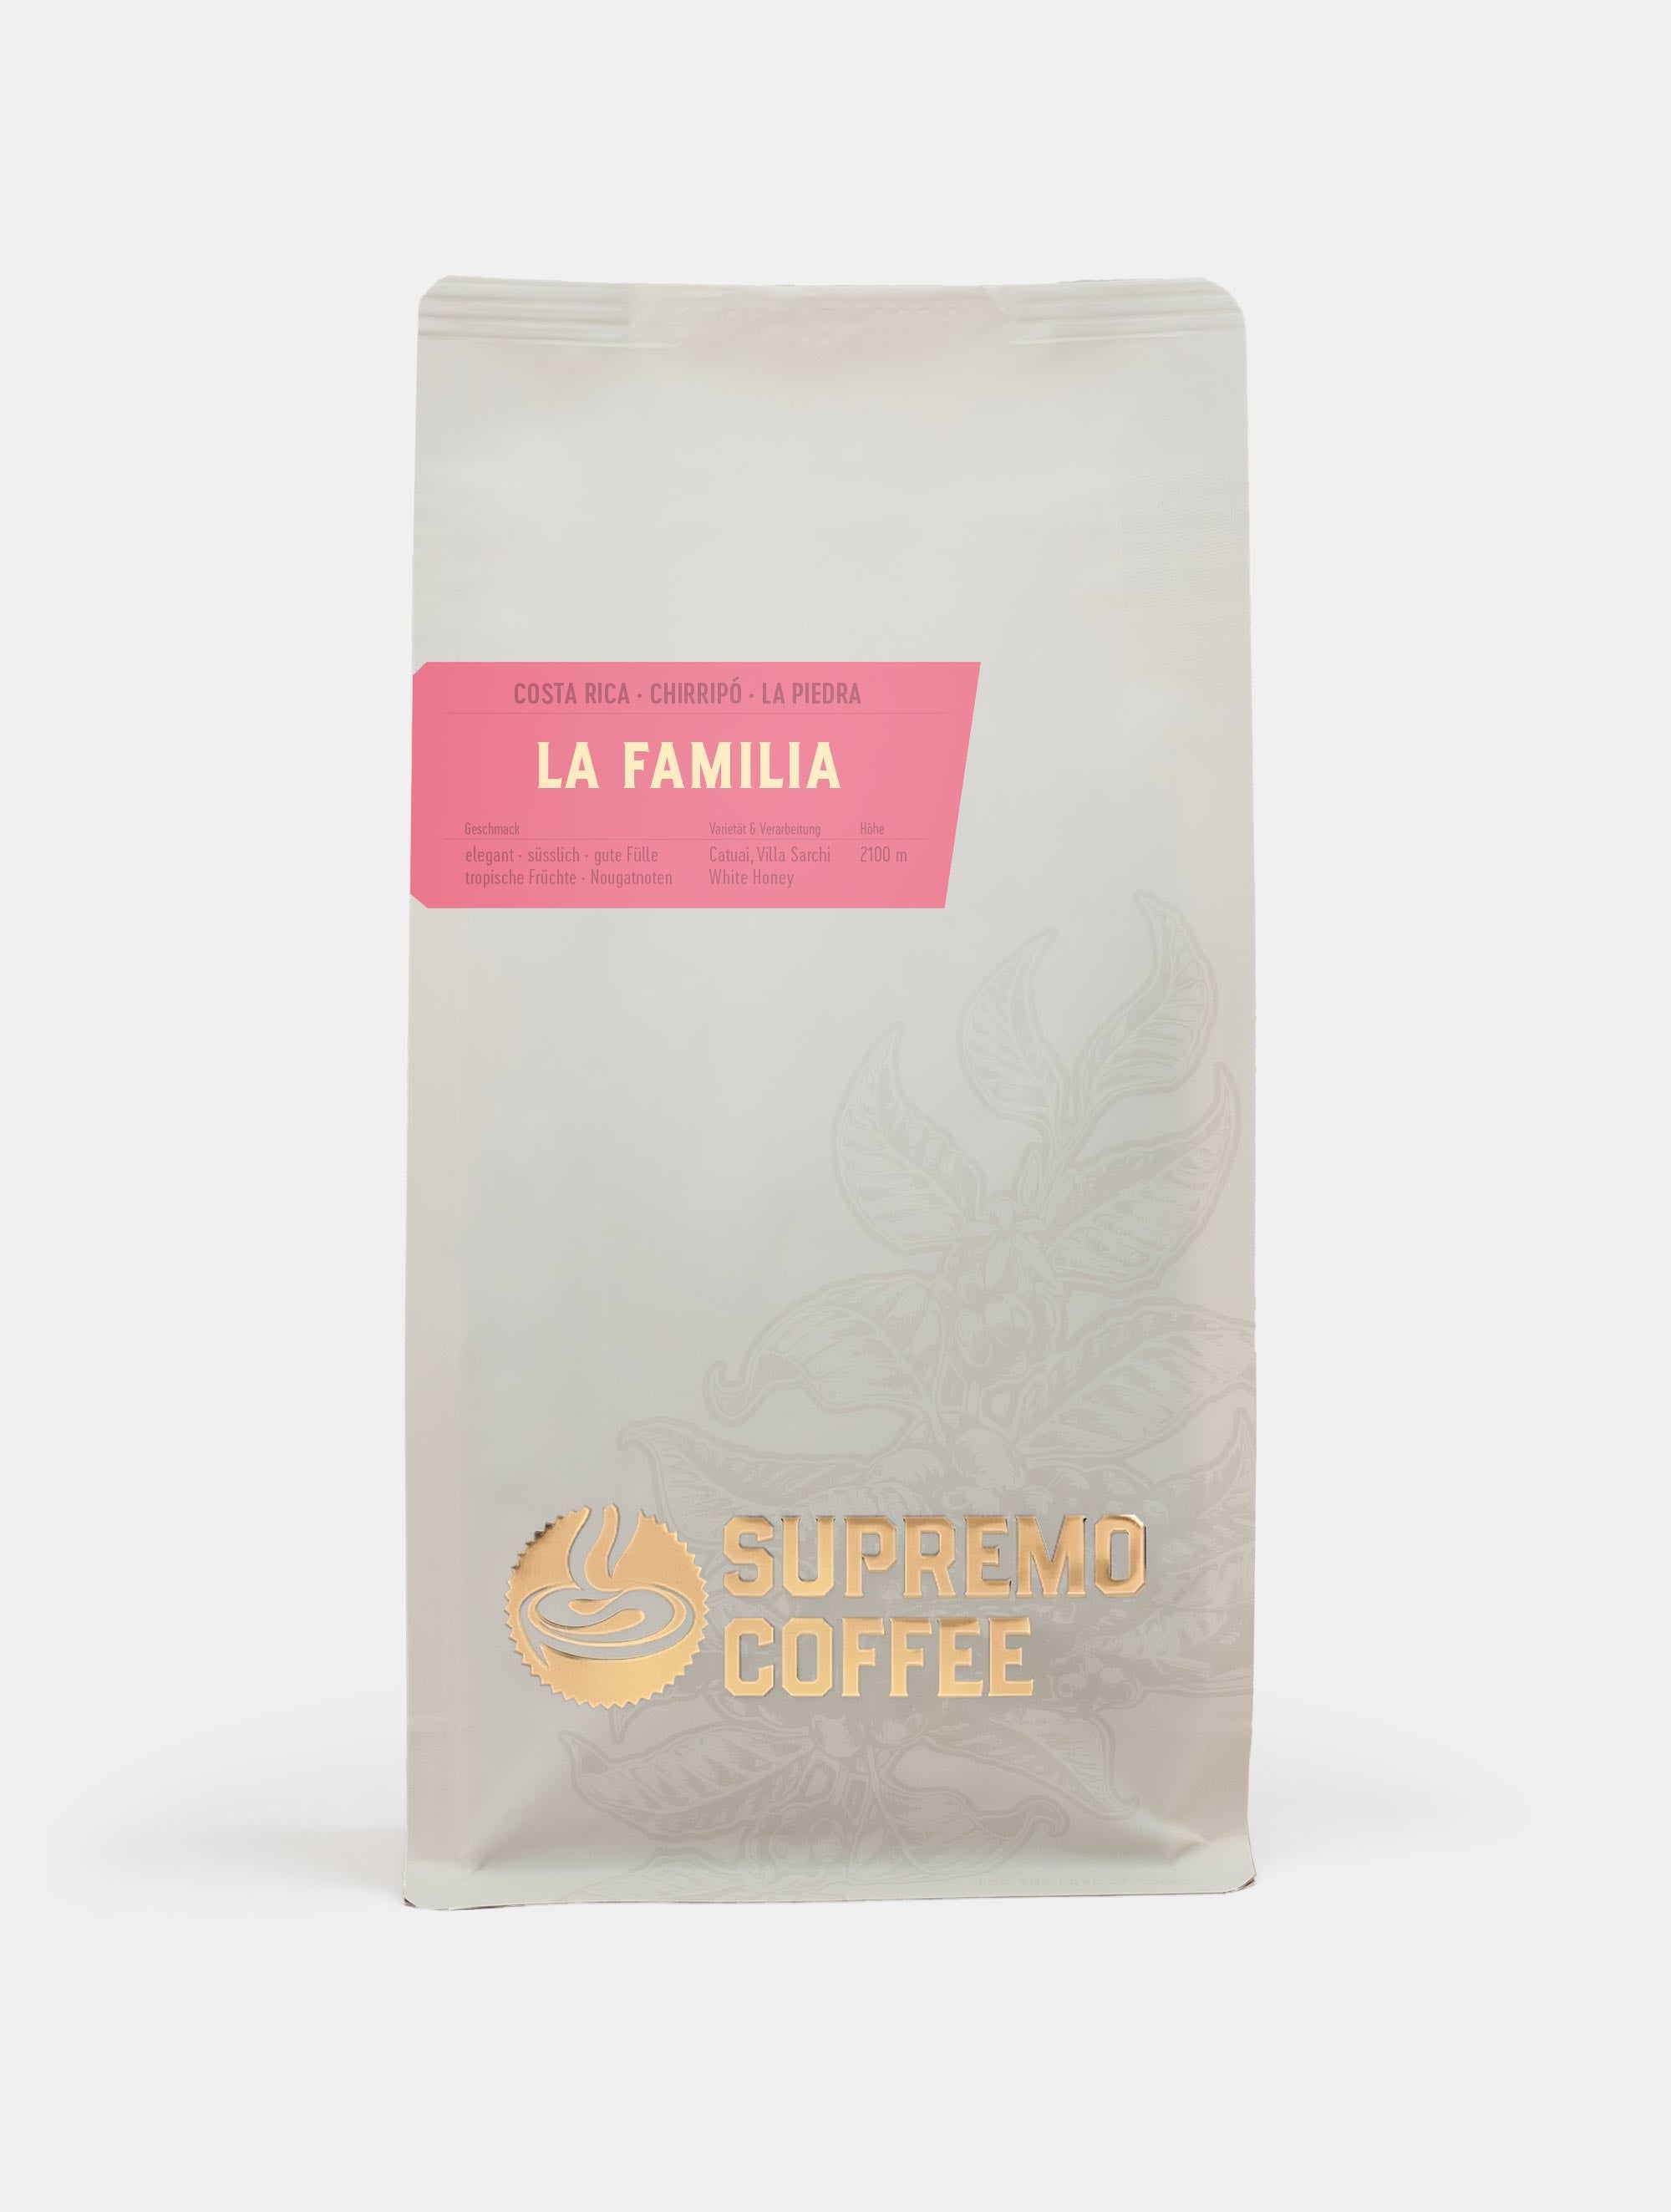 La Familia, Costa Rica | SUPREMO Coffee